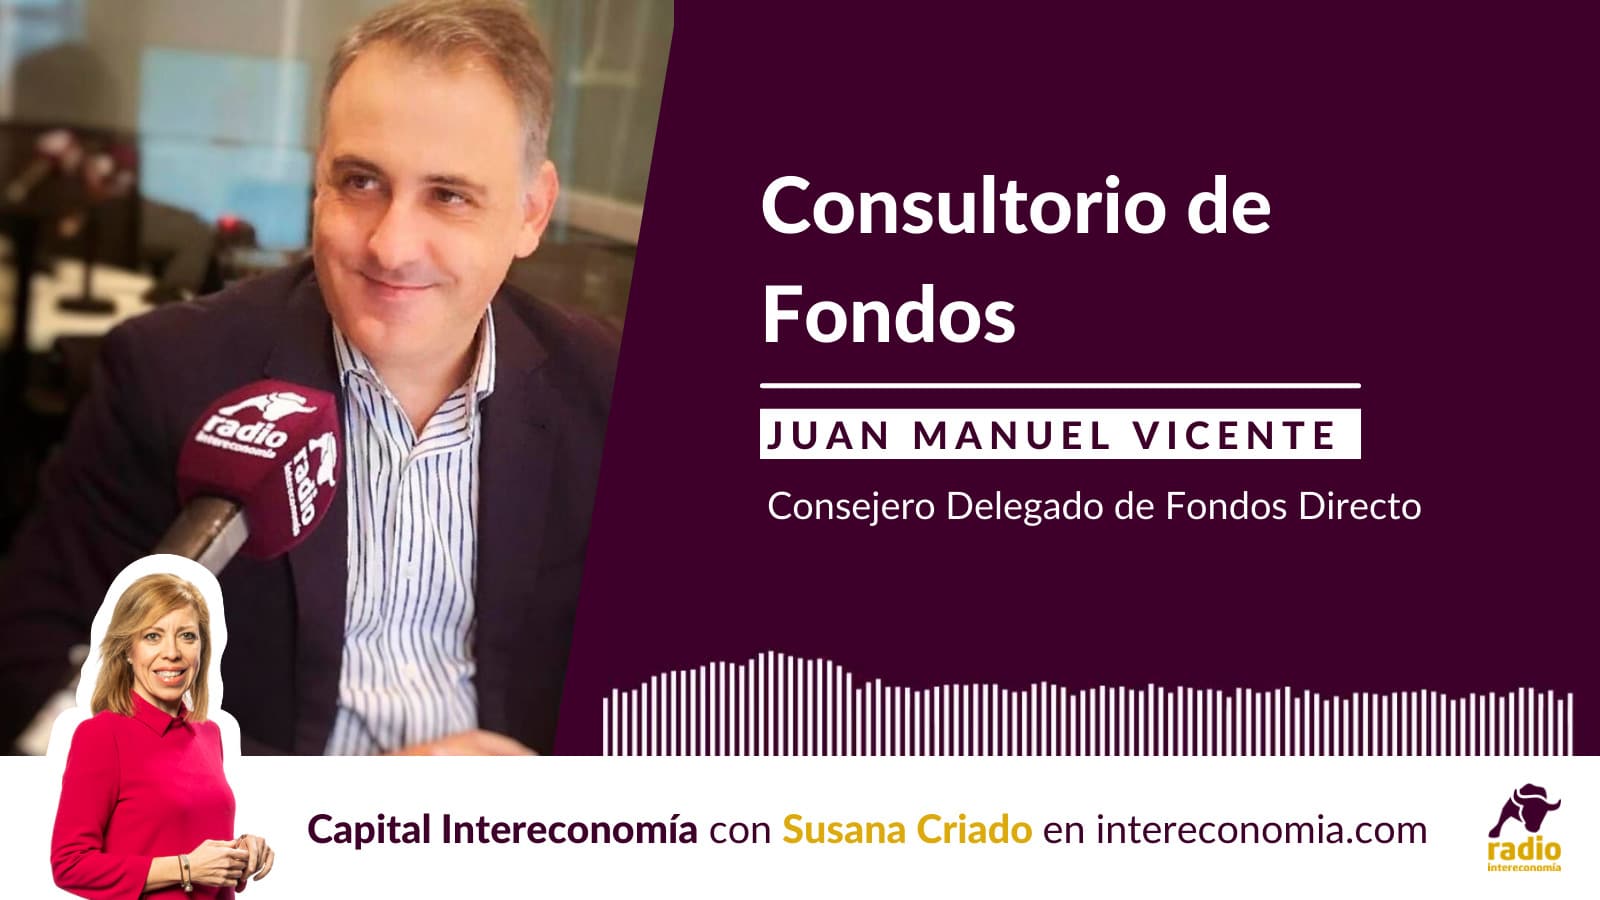 Consultorio de Fondos con Juan Manuel Vicente (Fondos Directo) 28/04/2021